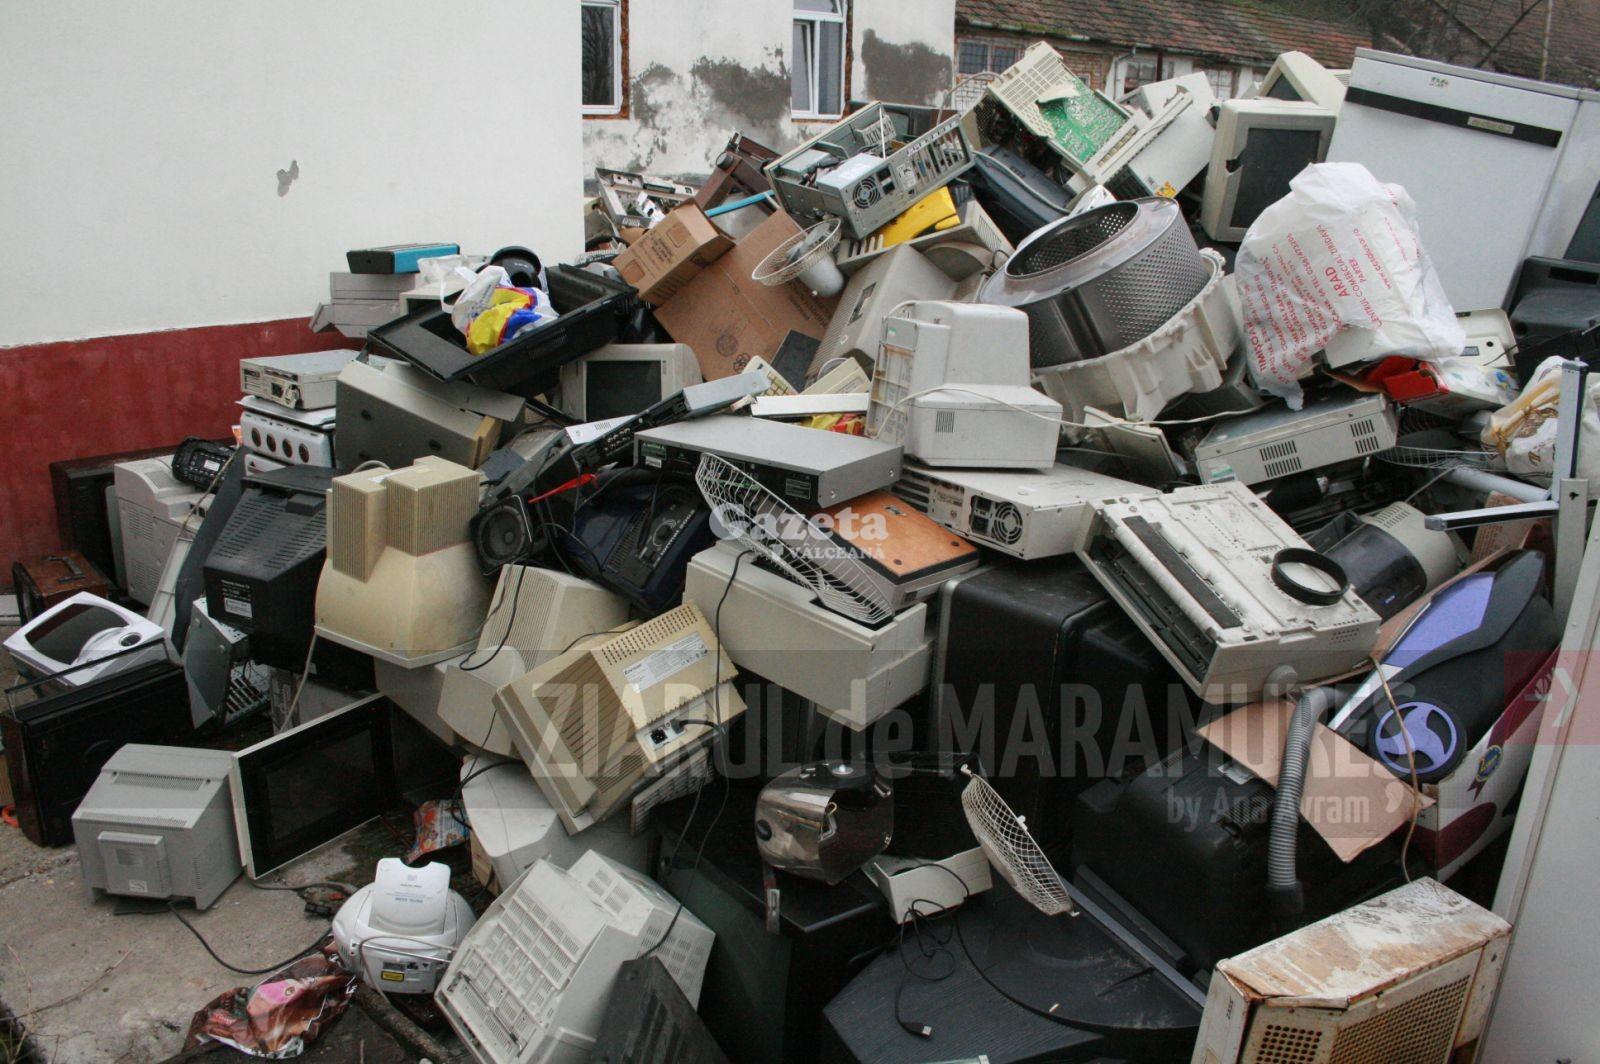 ADI Deșeuri despre colectarea deșeurilor de echipamente electrice și electronice în Maramureș